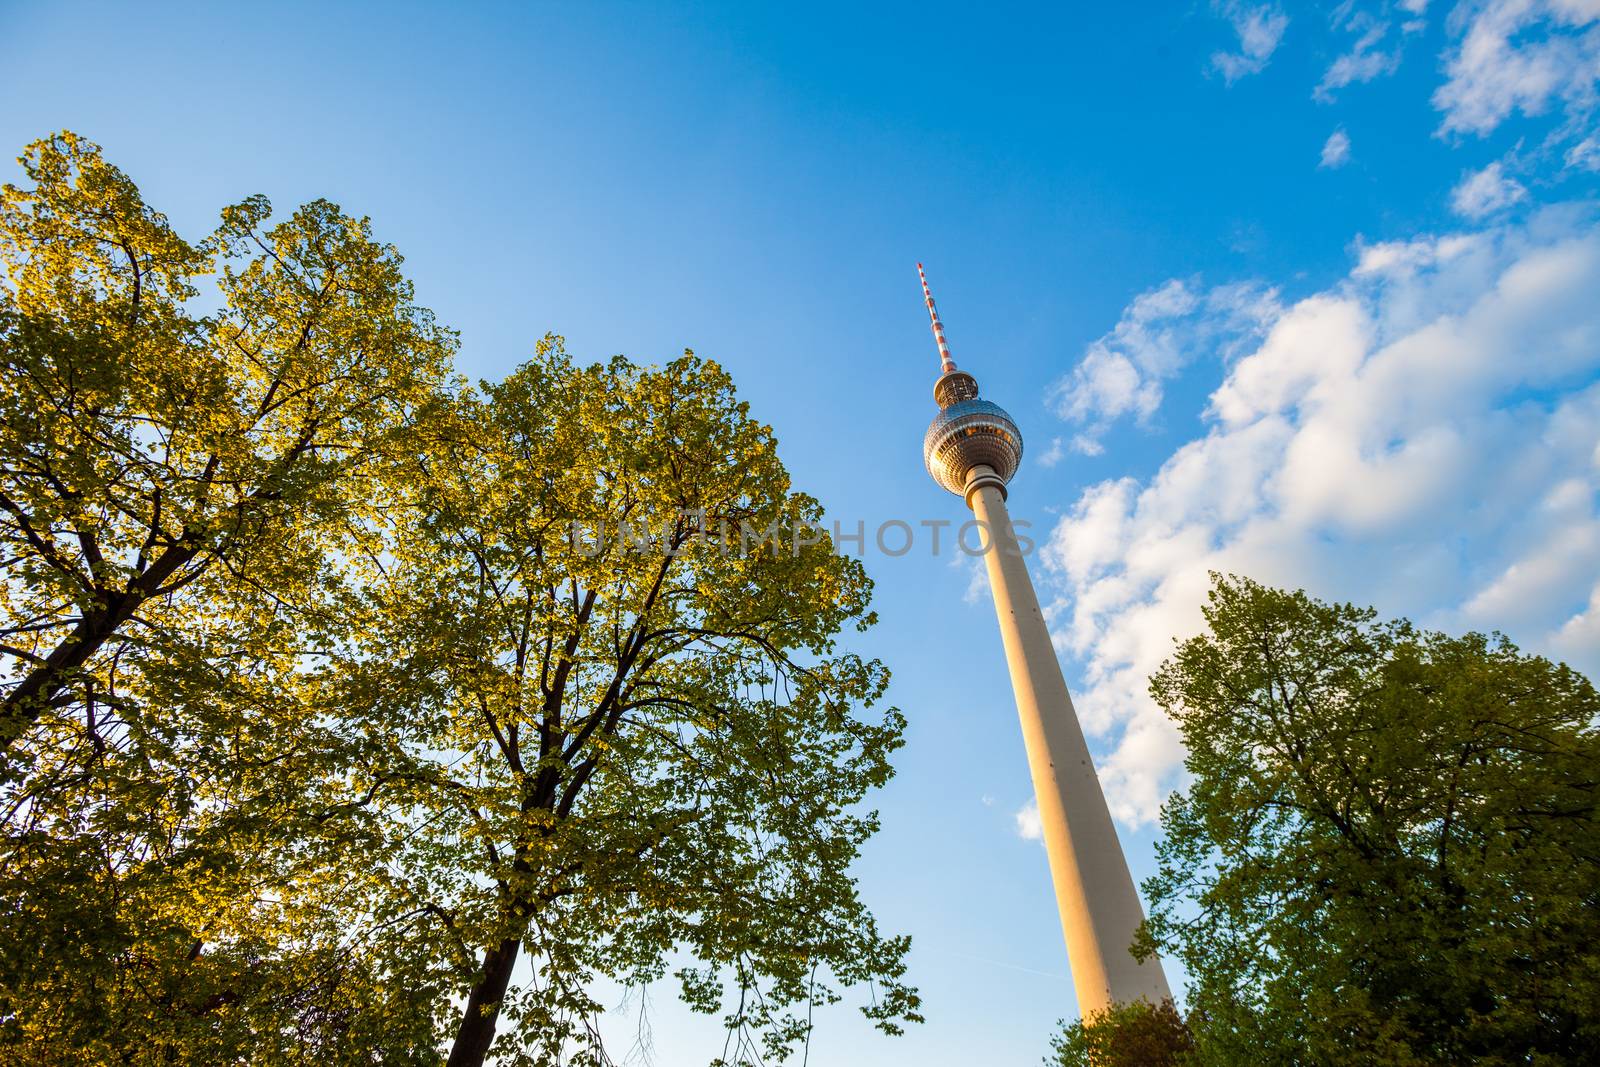 Fernsehturm (TV Tower), Berlin Alexanderplatz by edan